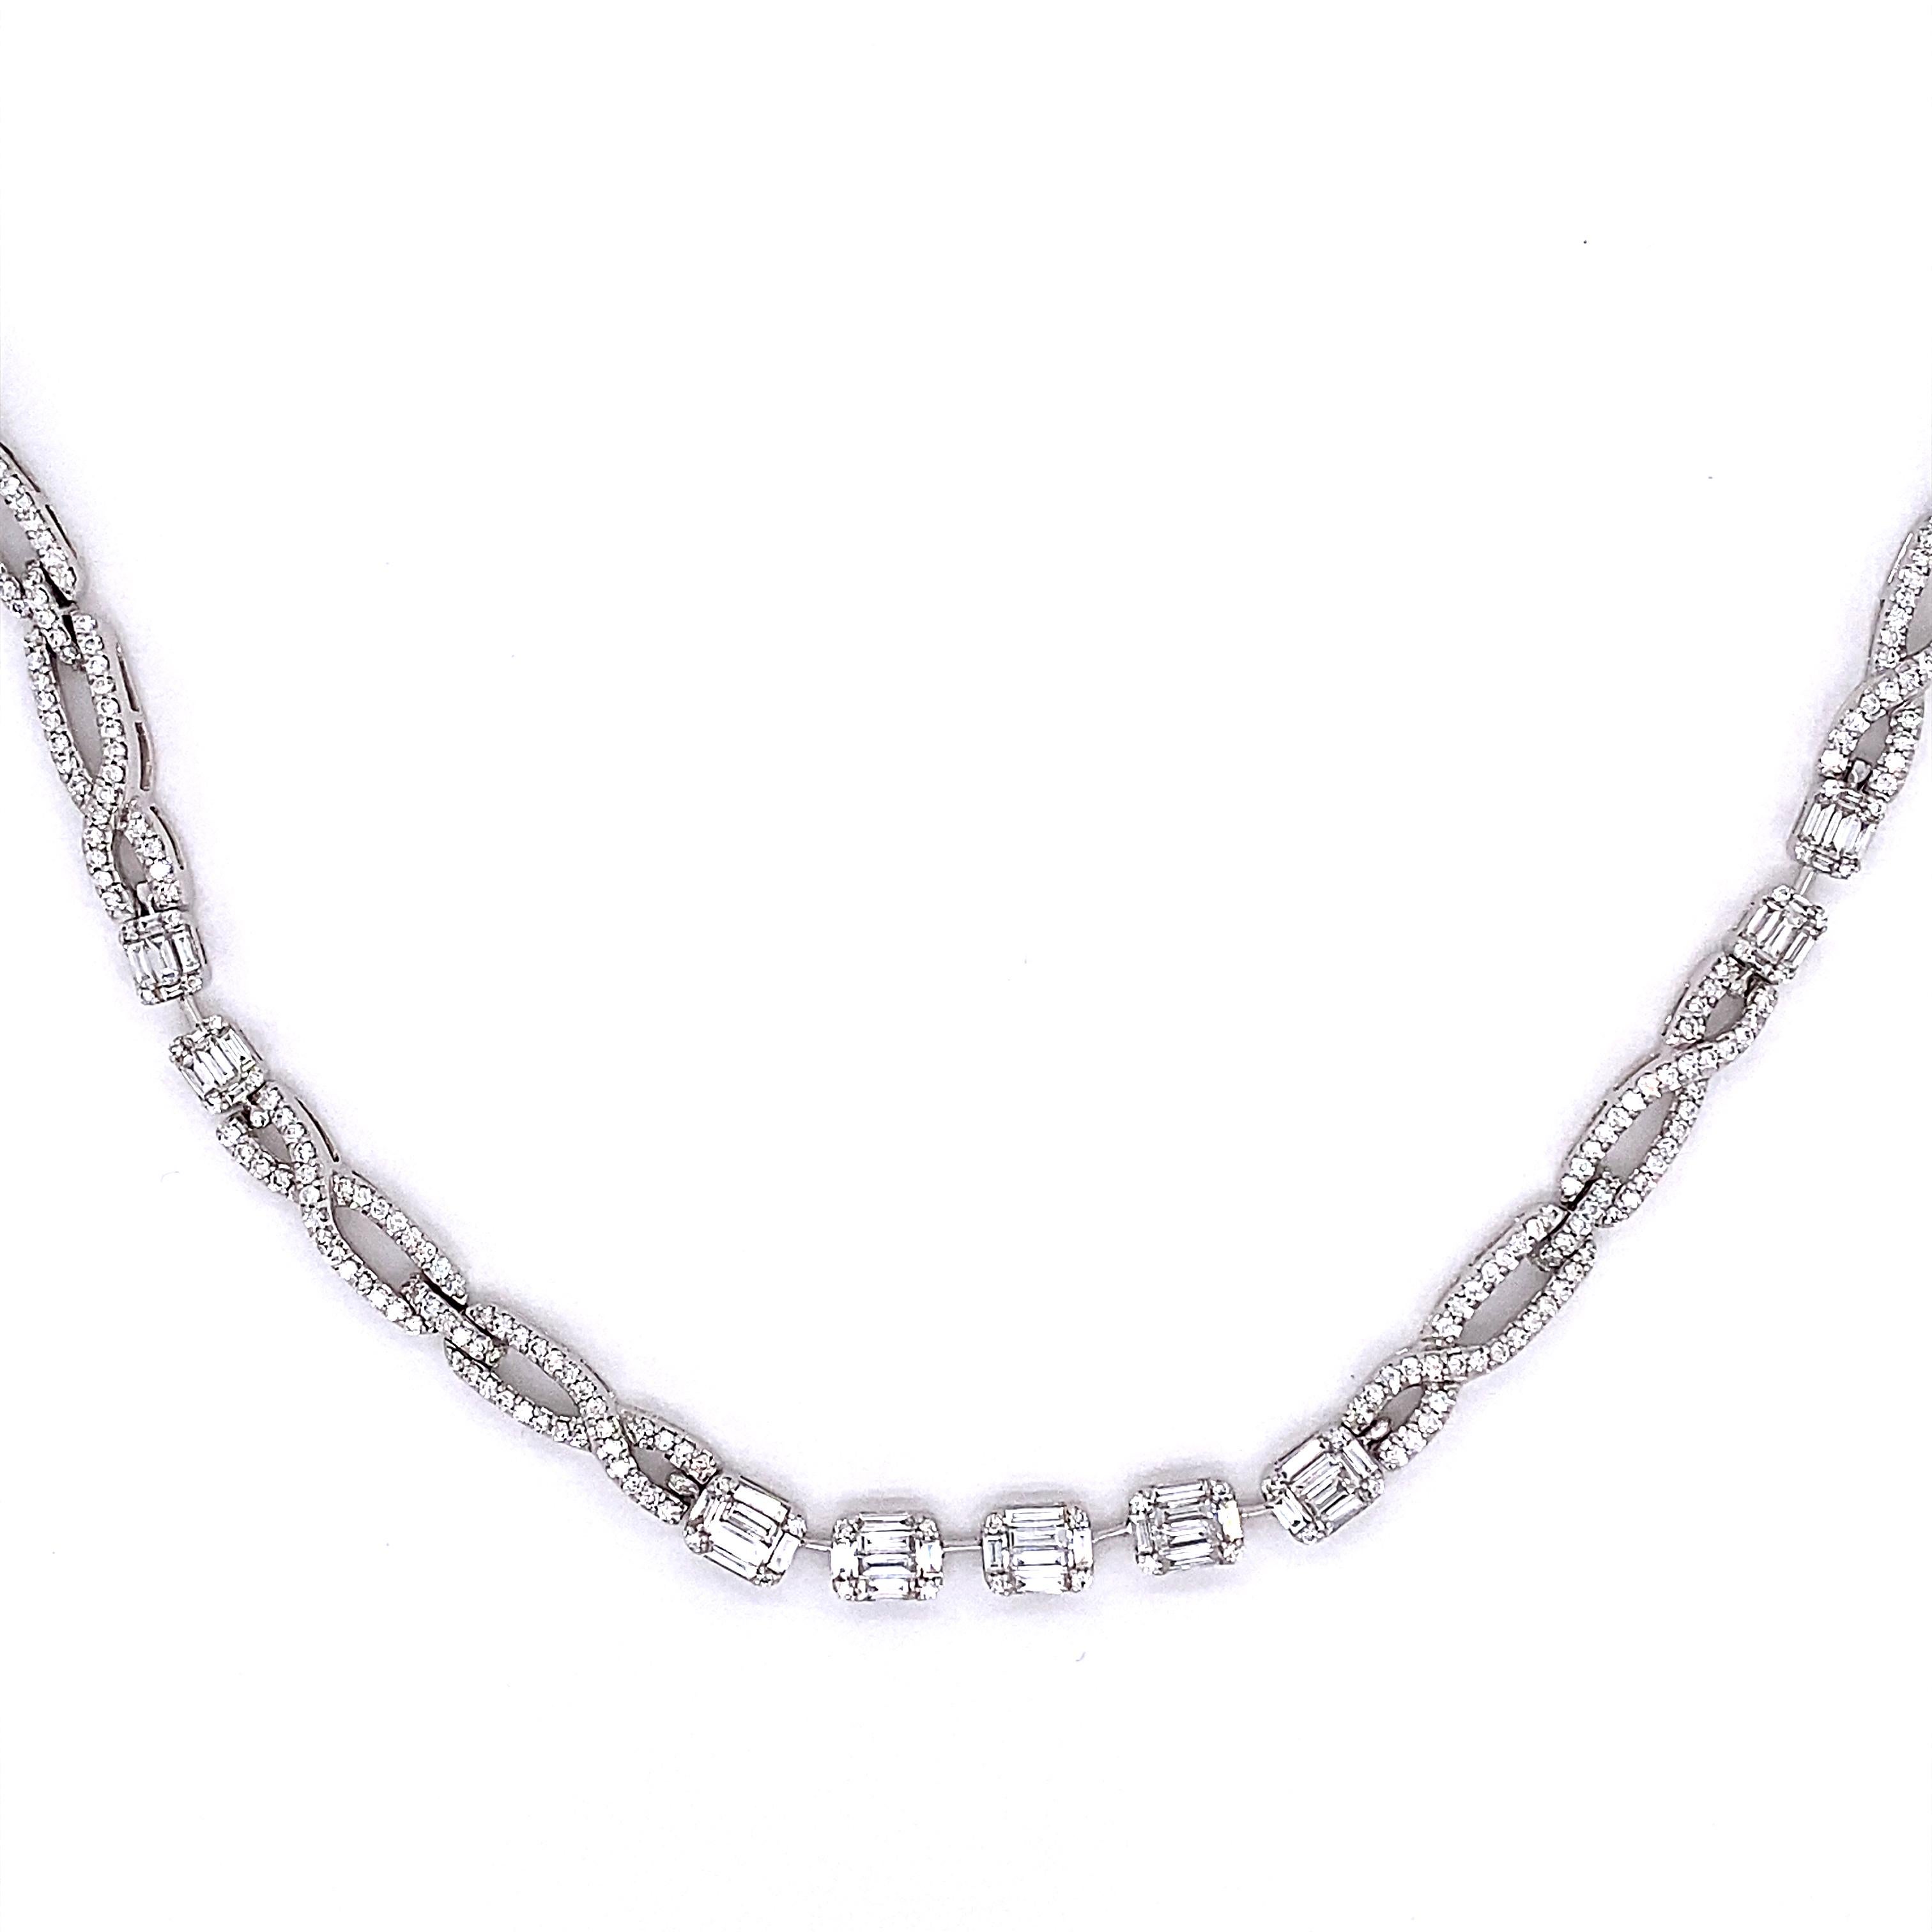 Diese atemberaubende Halskette besteht aus 13 Diamanten im Smaragdschliff. Die Cluster sind durch ein unendliches Design aus runden weißen Diamanten getrennt. Diese Halskette ist 18 Zoll lang und wird mit einem verdeckten Verschluss und einem